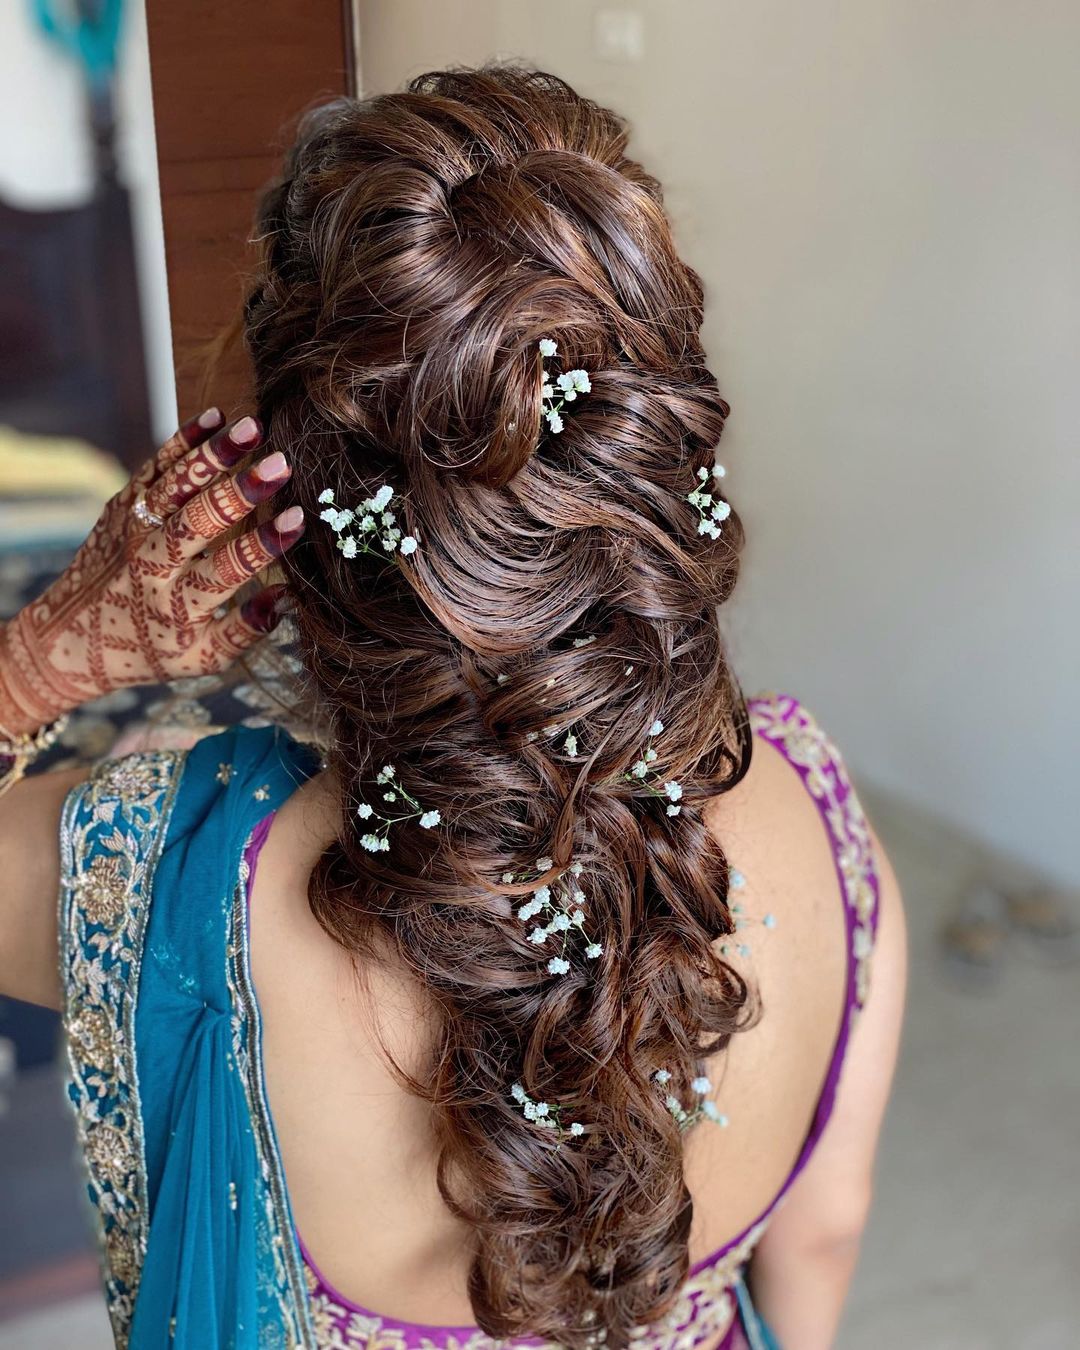 Haldi bride #hairstyles #hairstyle #haircut #makeupartist #makeuptutorial  #reels #reelsvideo #reelsindia #viral #instagood #instagram… | Instagram